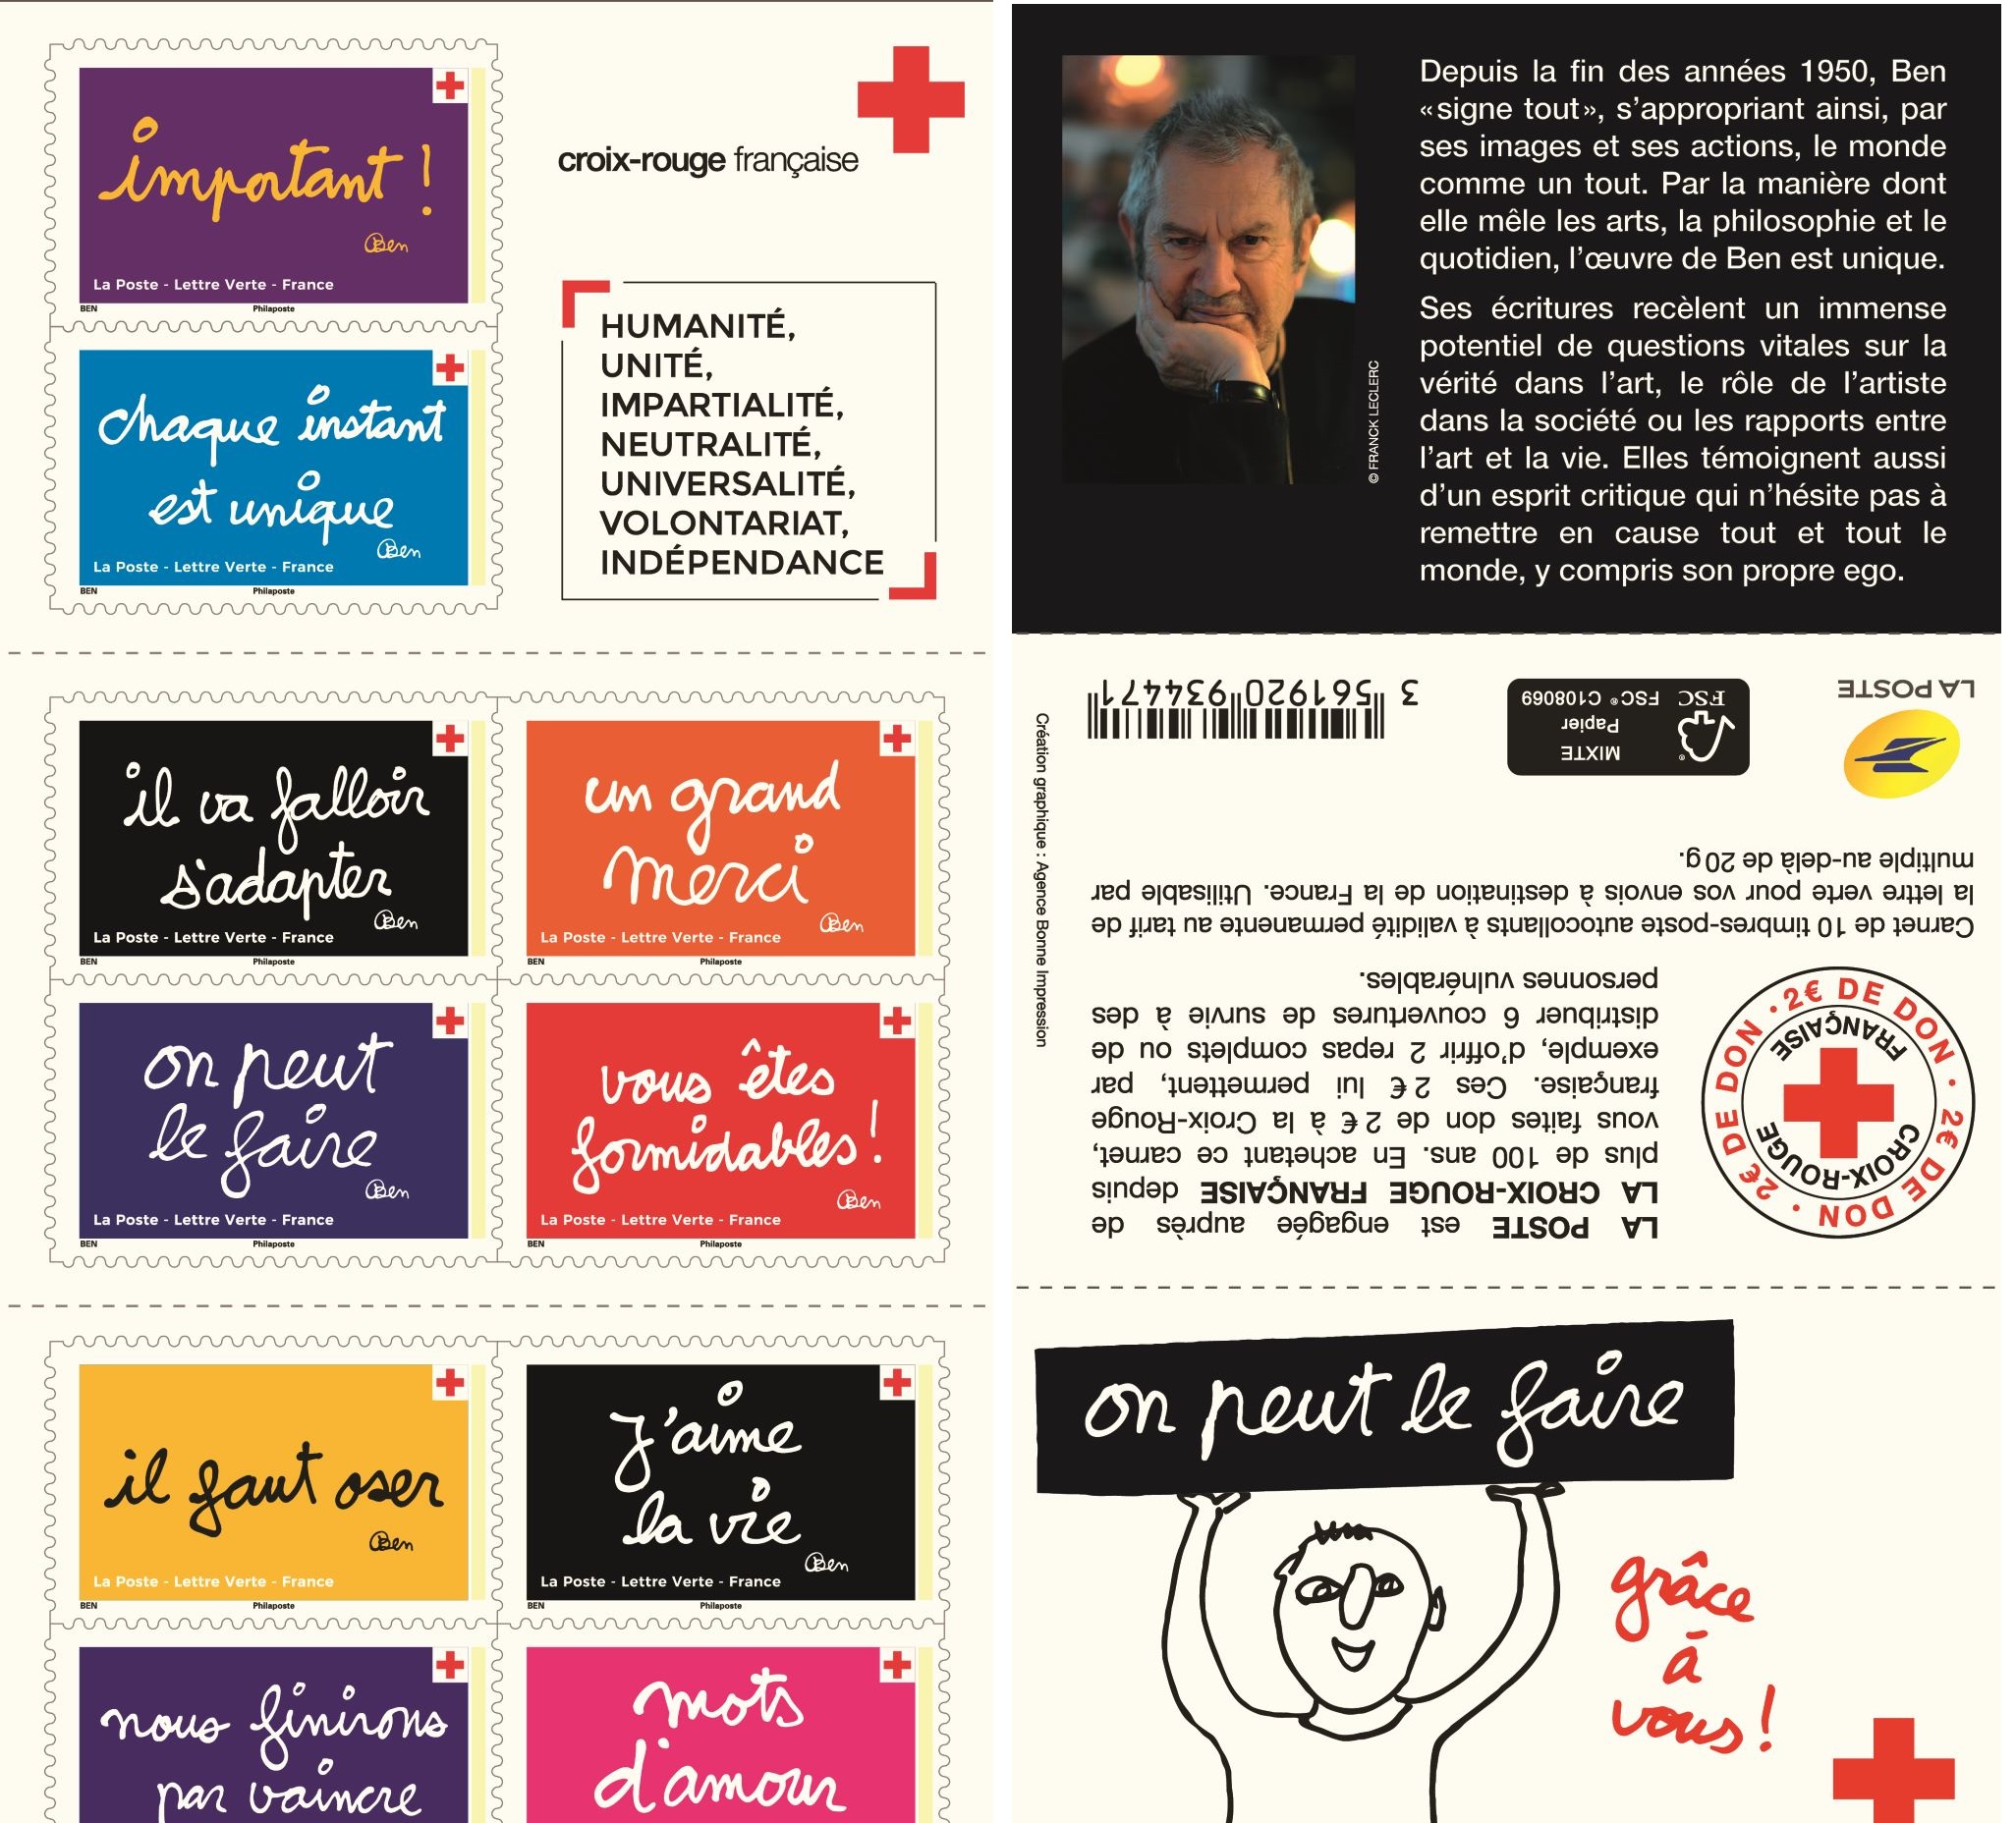 Emission Carnet Croix-Rouge française ’On peut le faire’